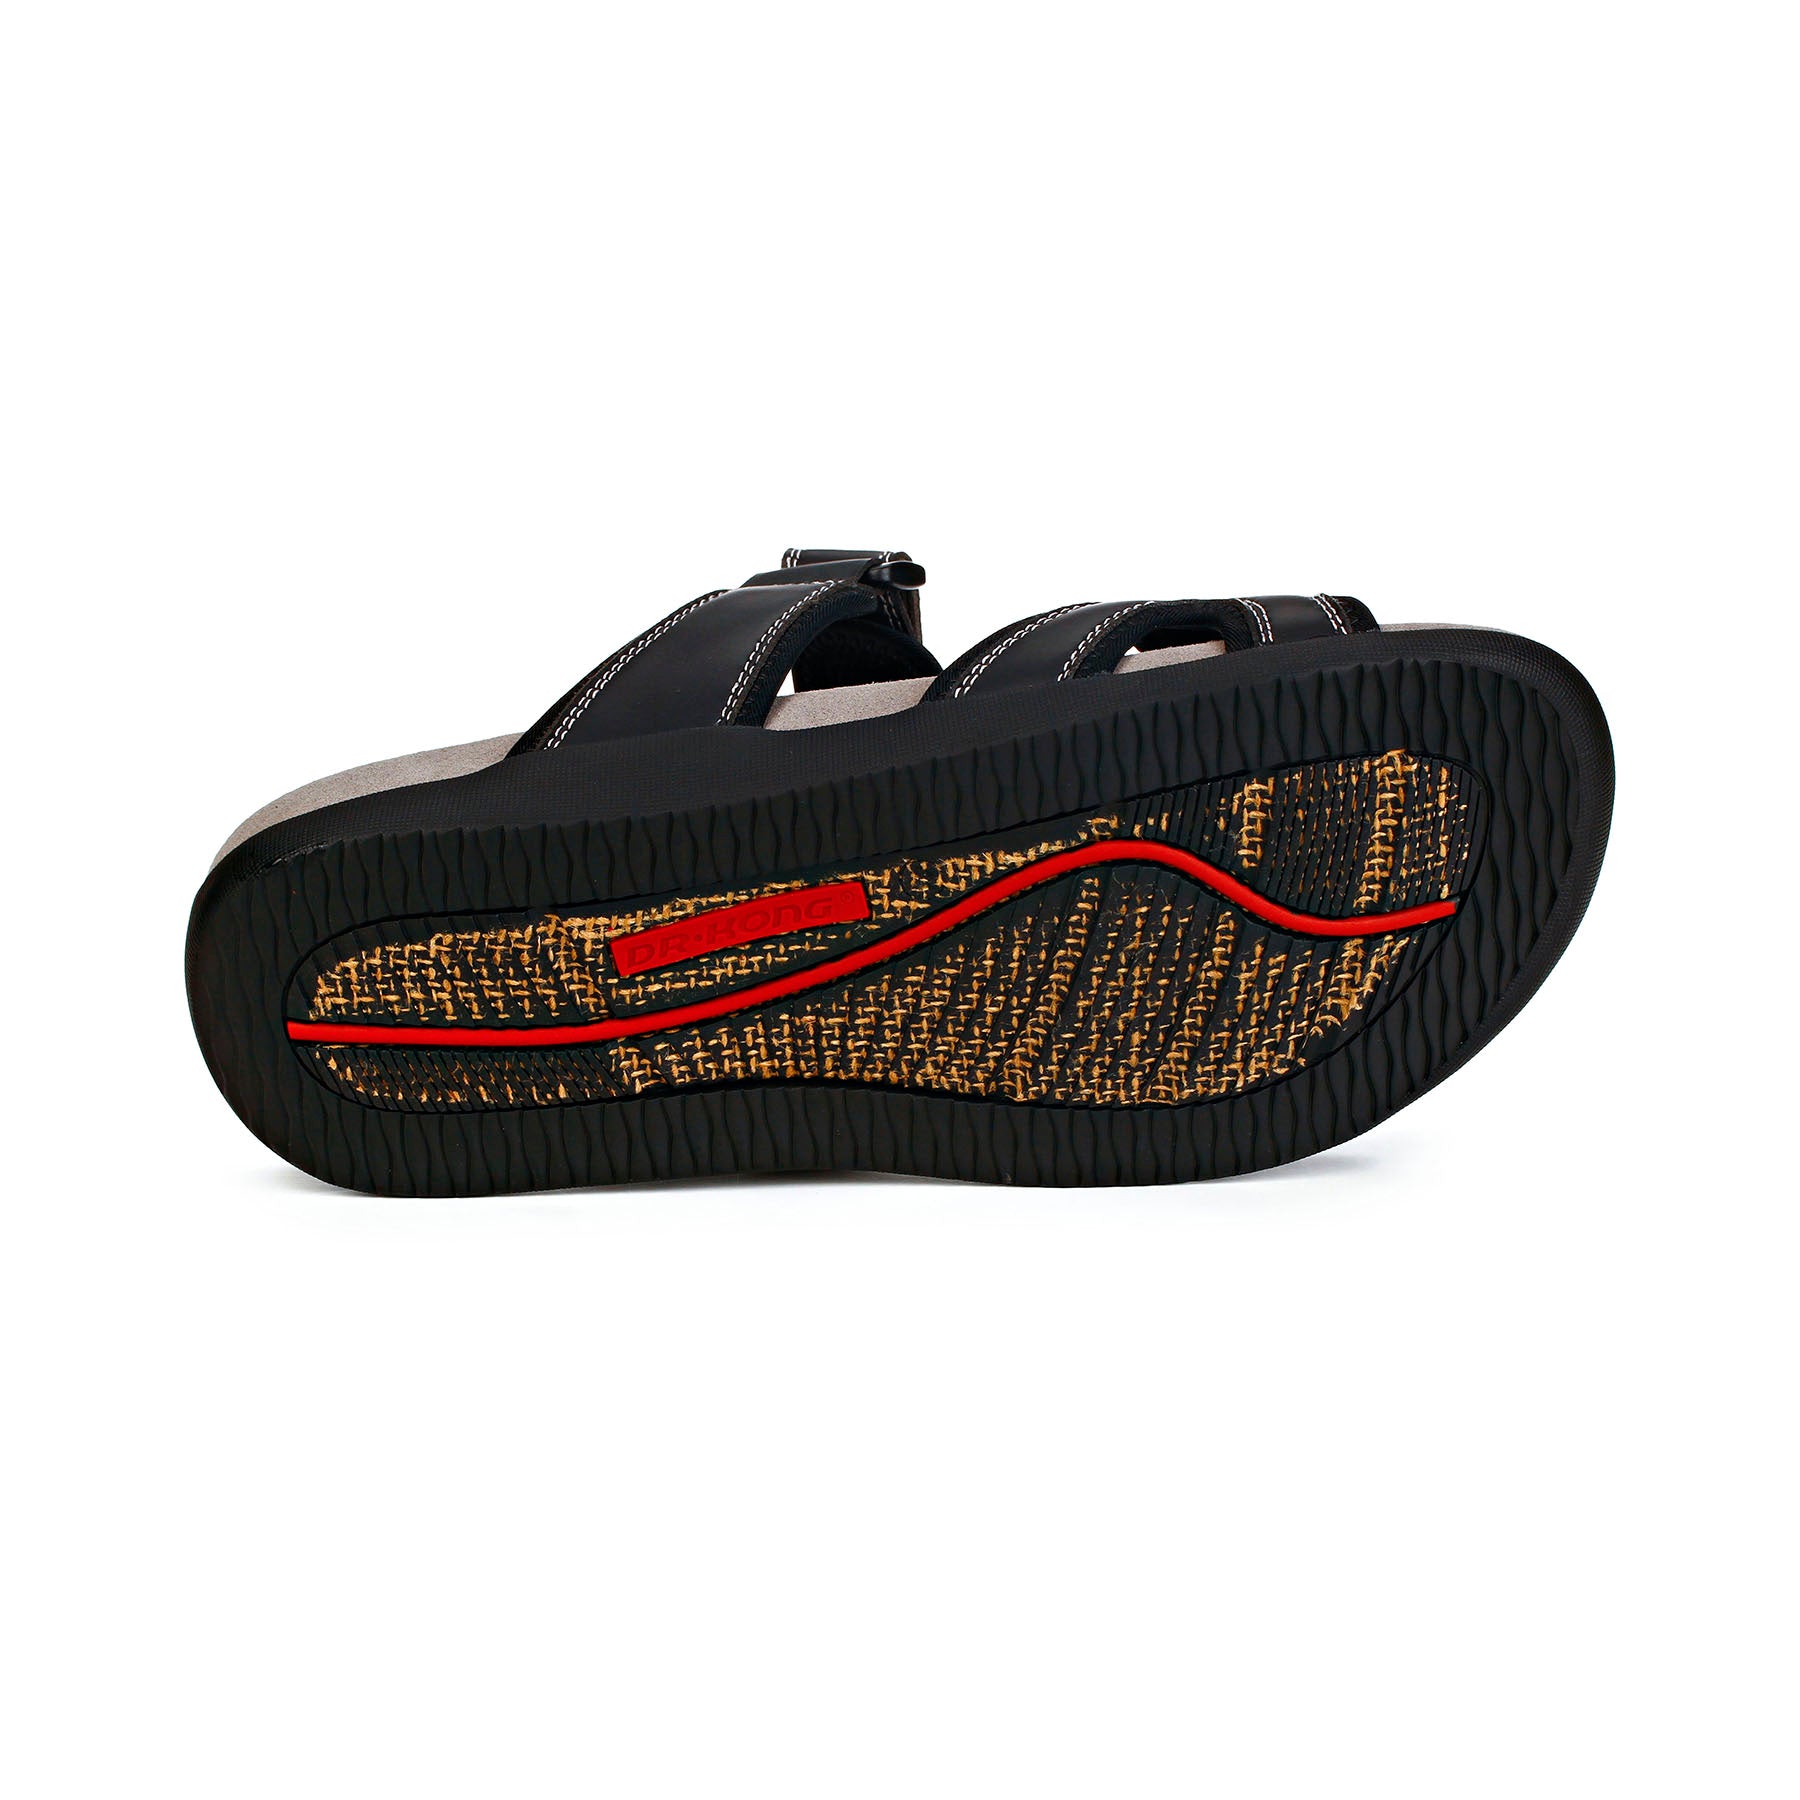 Dr. Kong Smart Footbed Mens Sandals S9000273